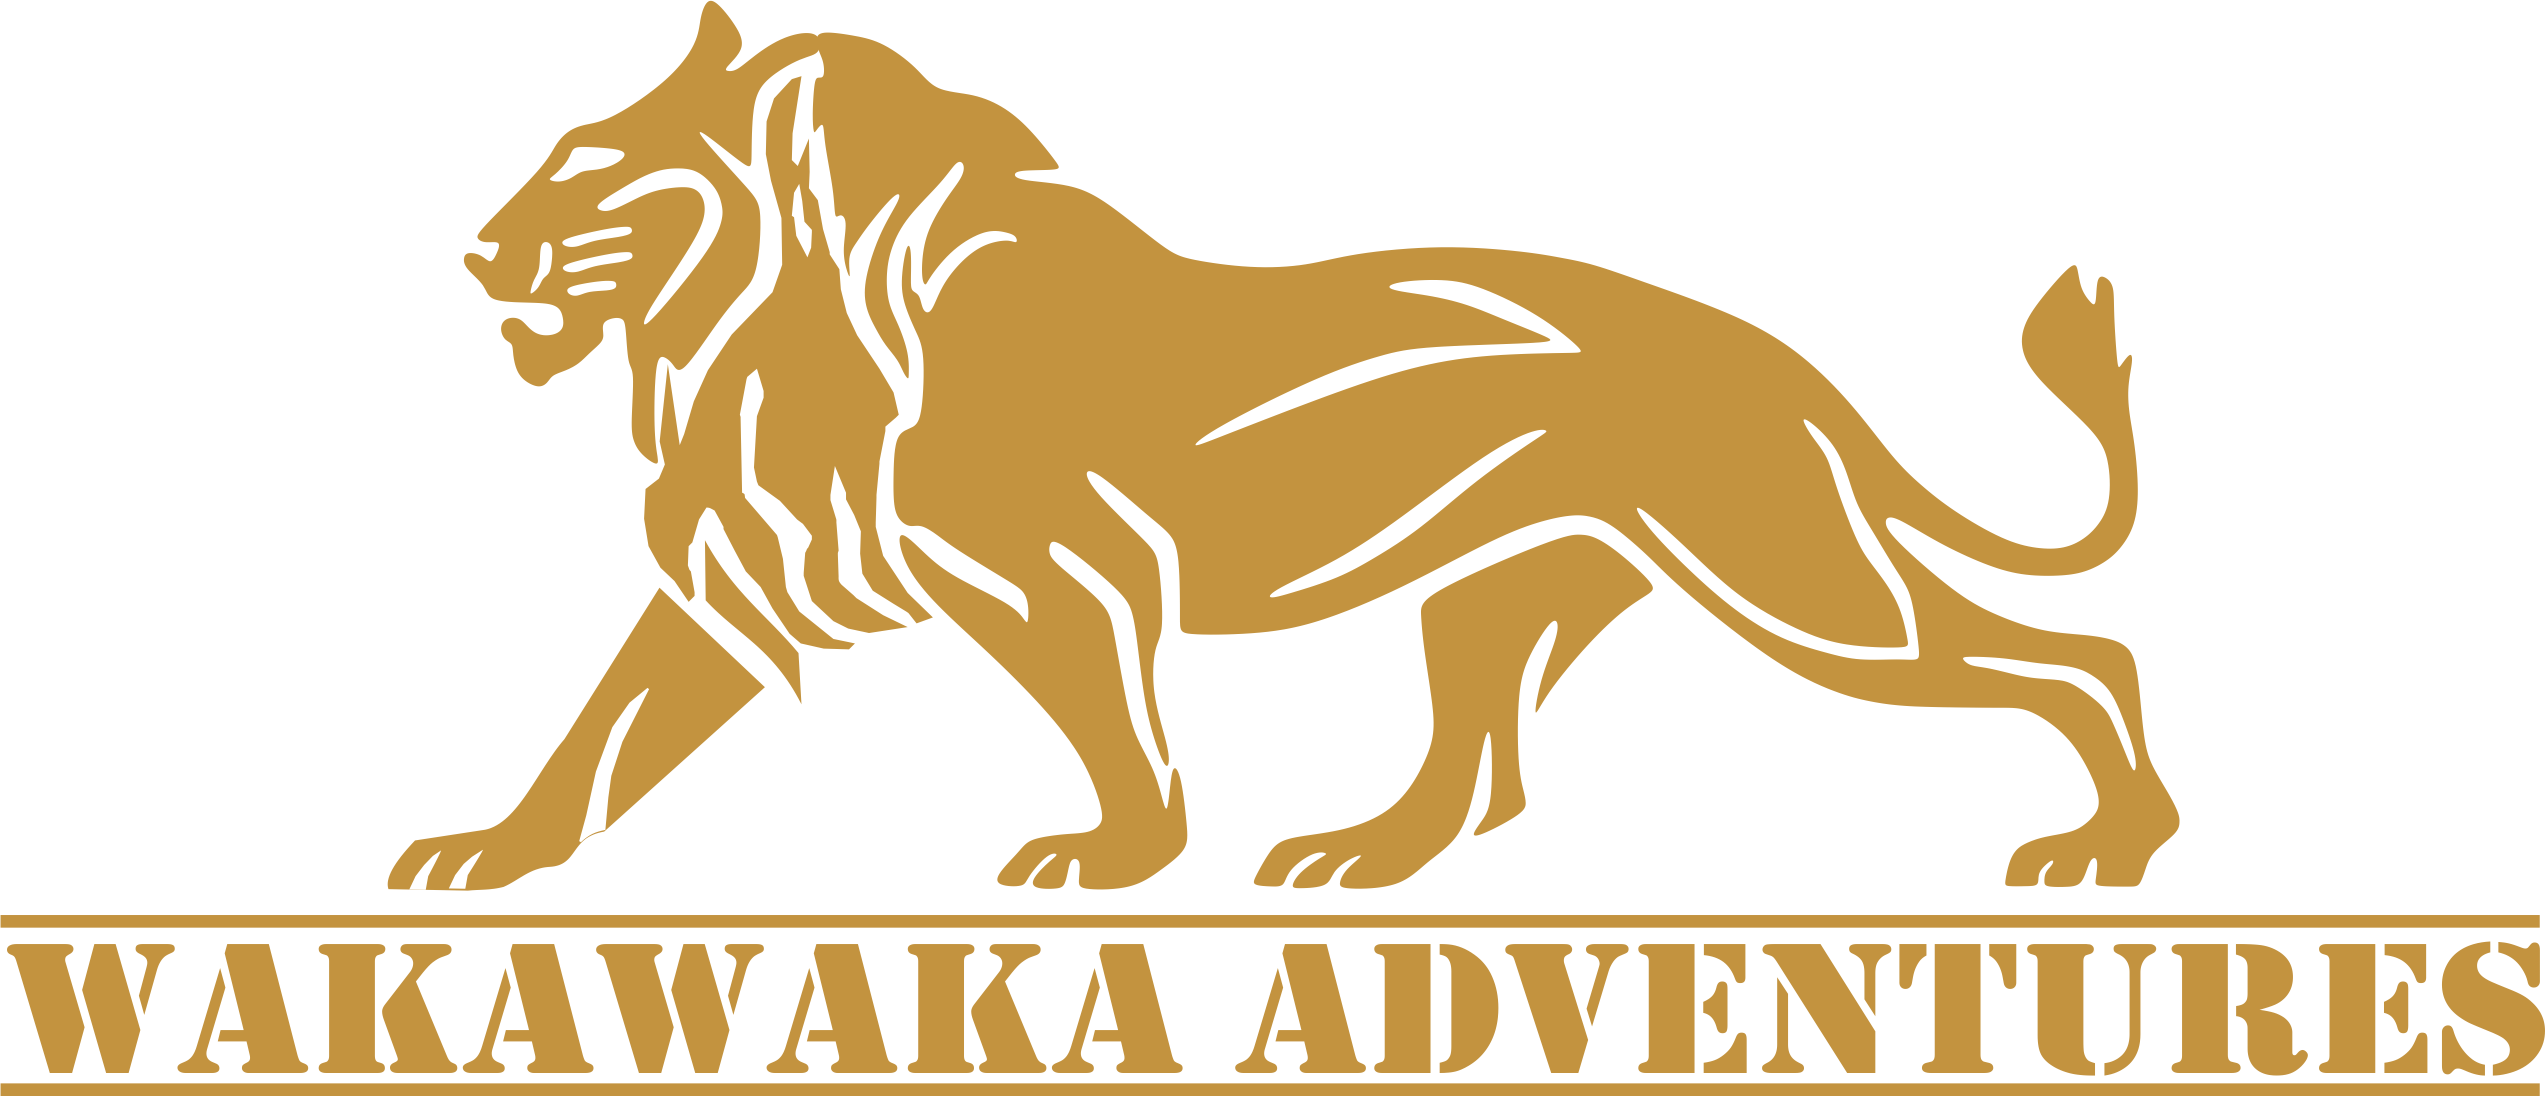 Wakawaka Adventures.png